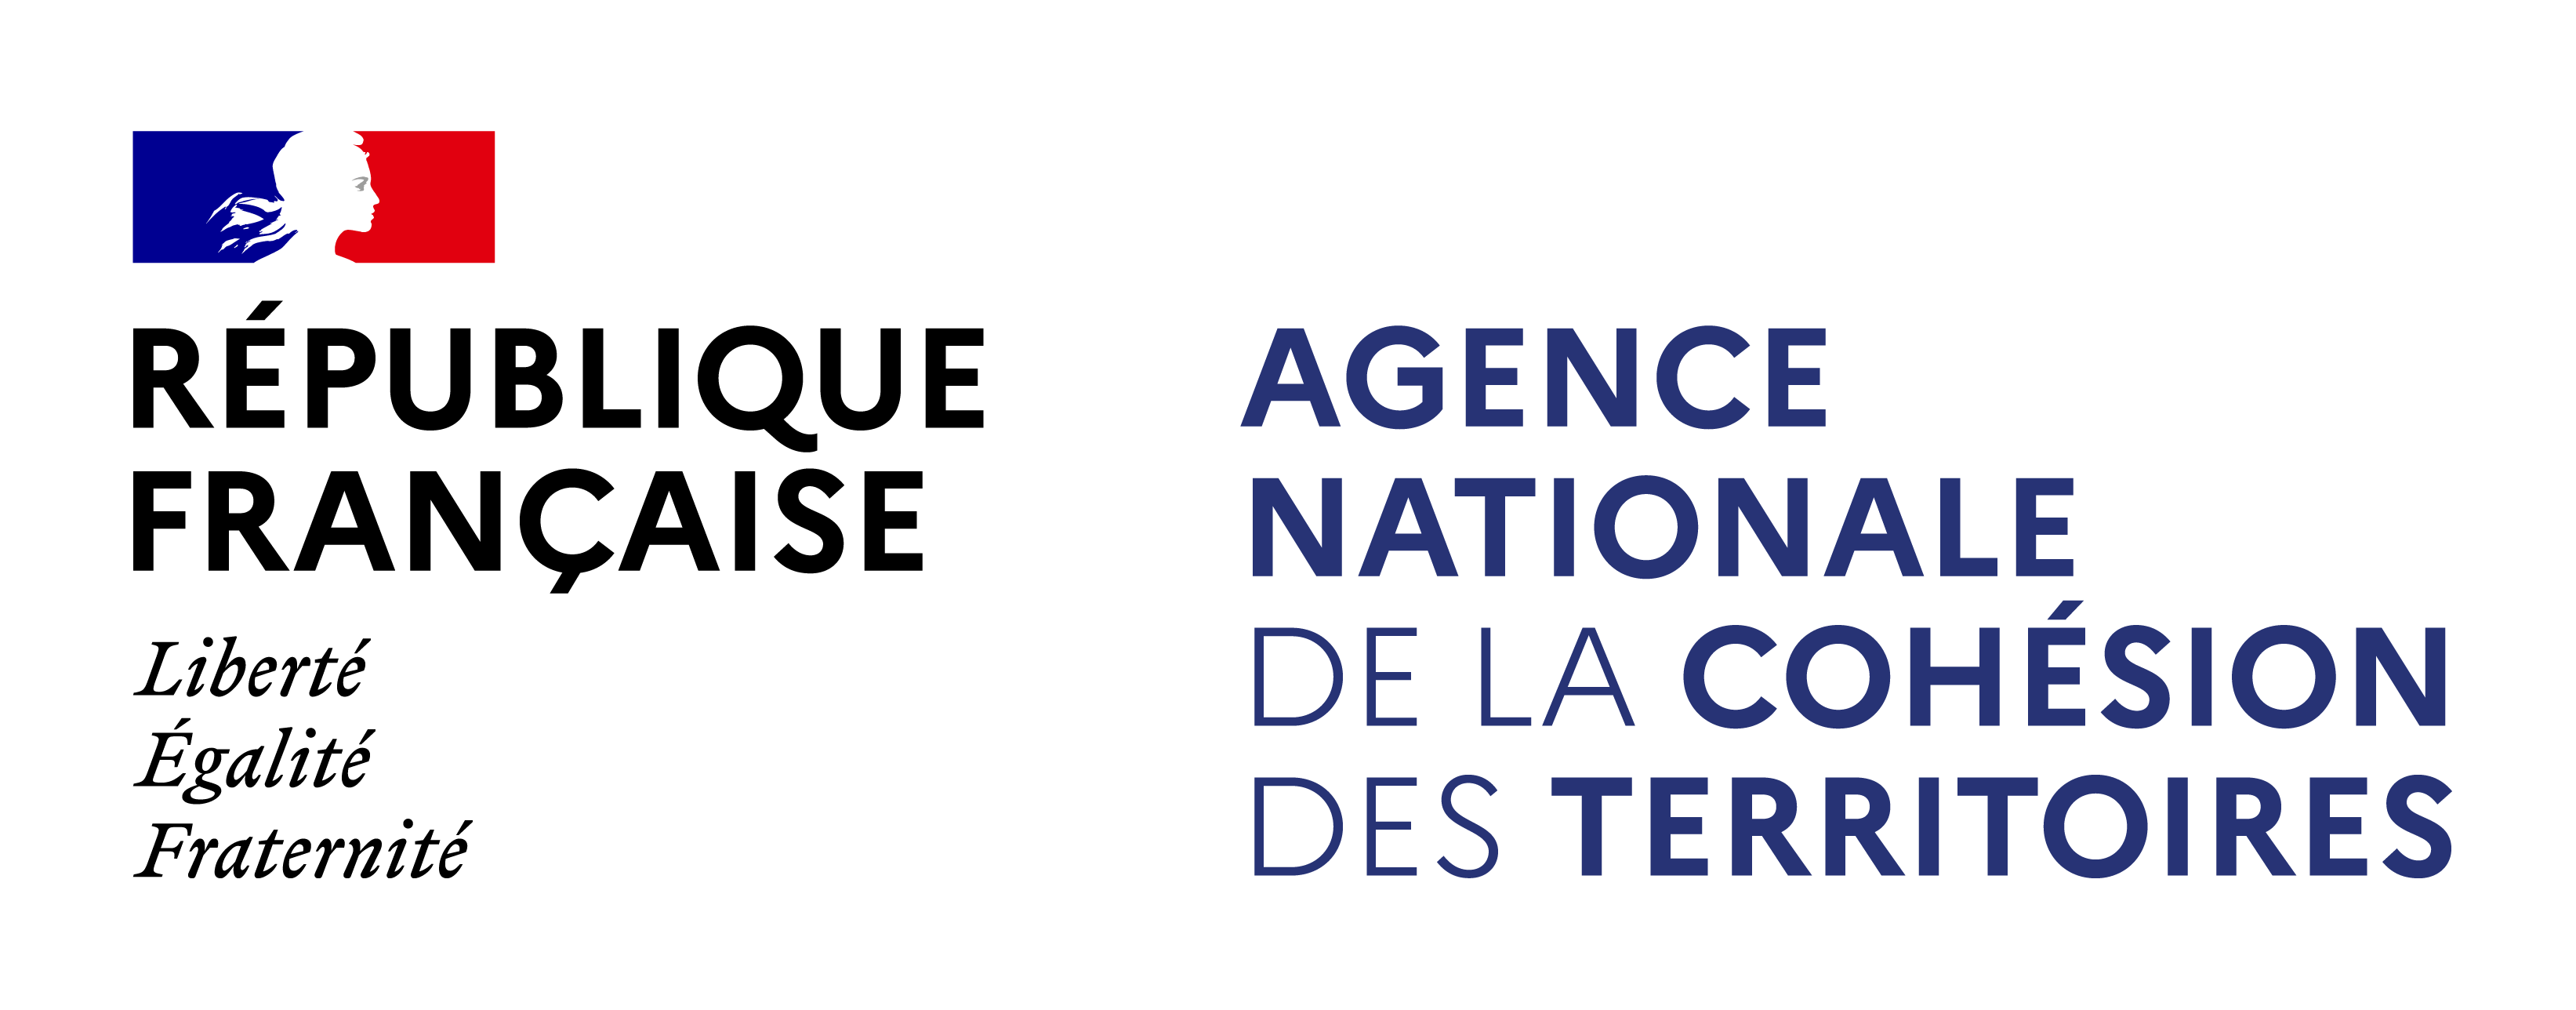 Logo l'Agence Nationale de la Cohésion des Territoires